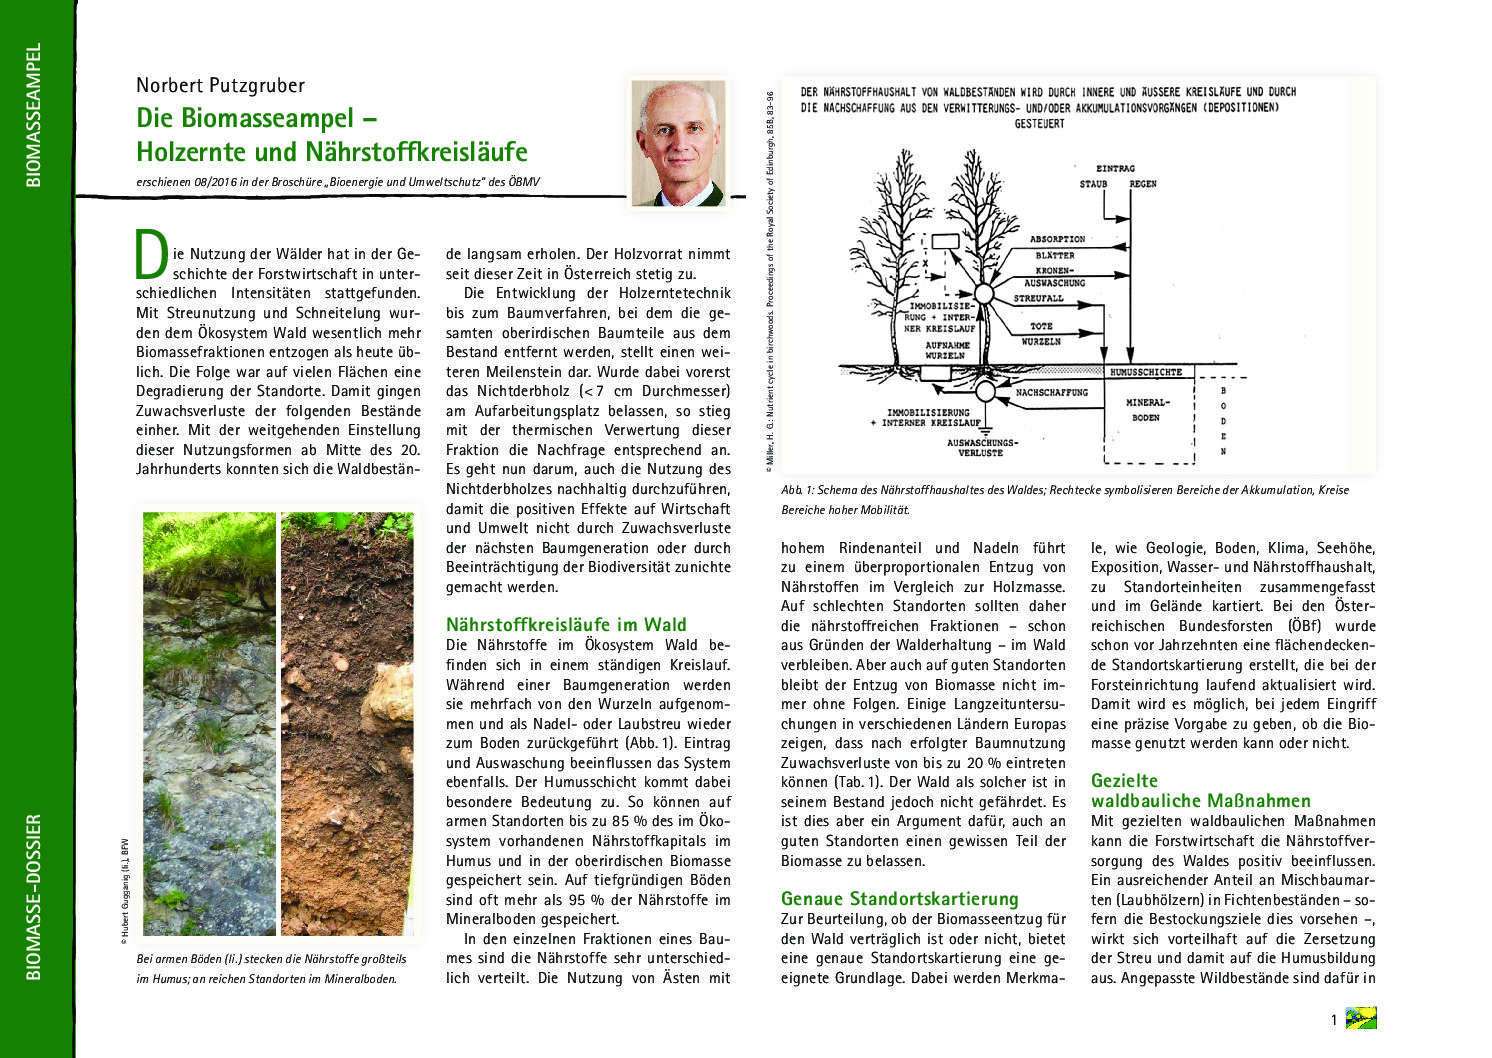 Die Biomasseampel – Holzernte und Nährstoffkreisläufe